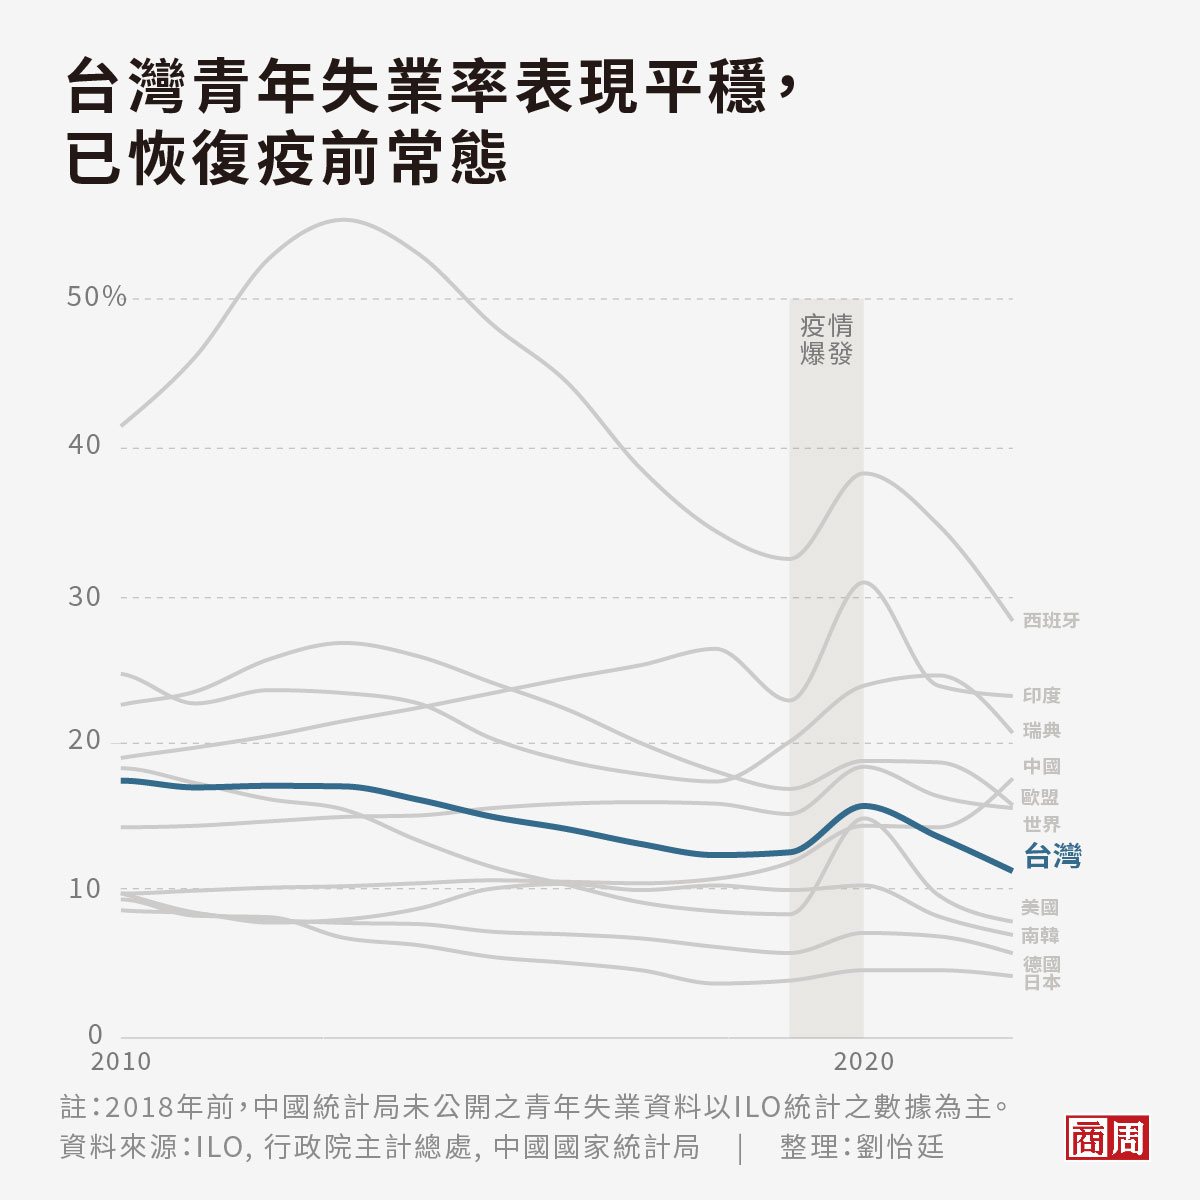 台灣青年失業率為11.4%，相較全球平均其實表現平穩。